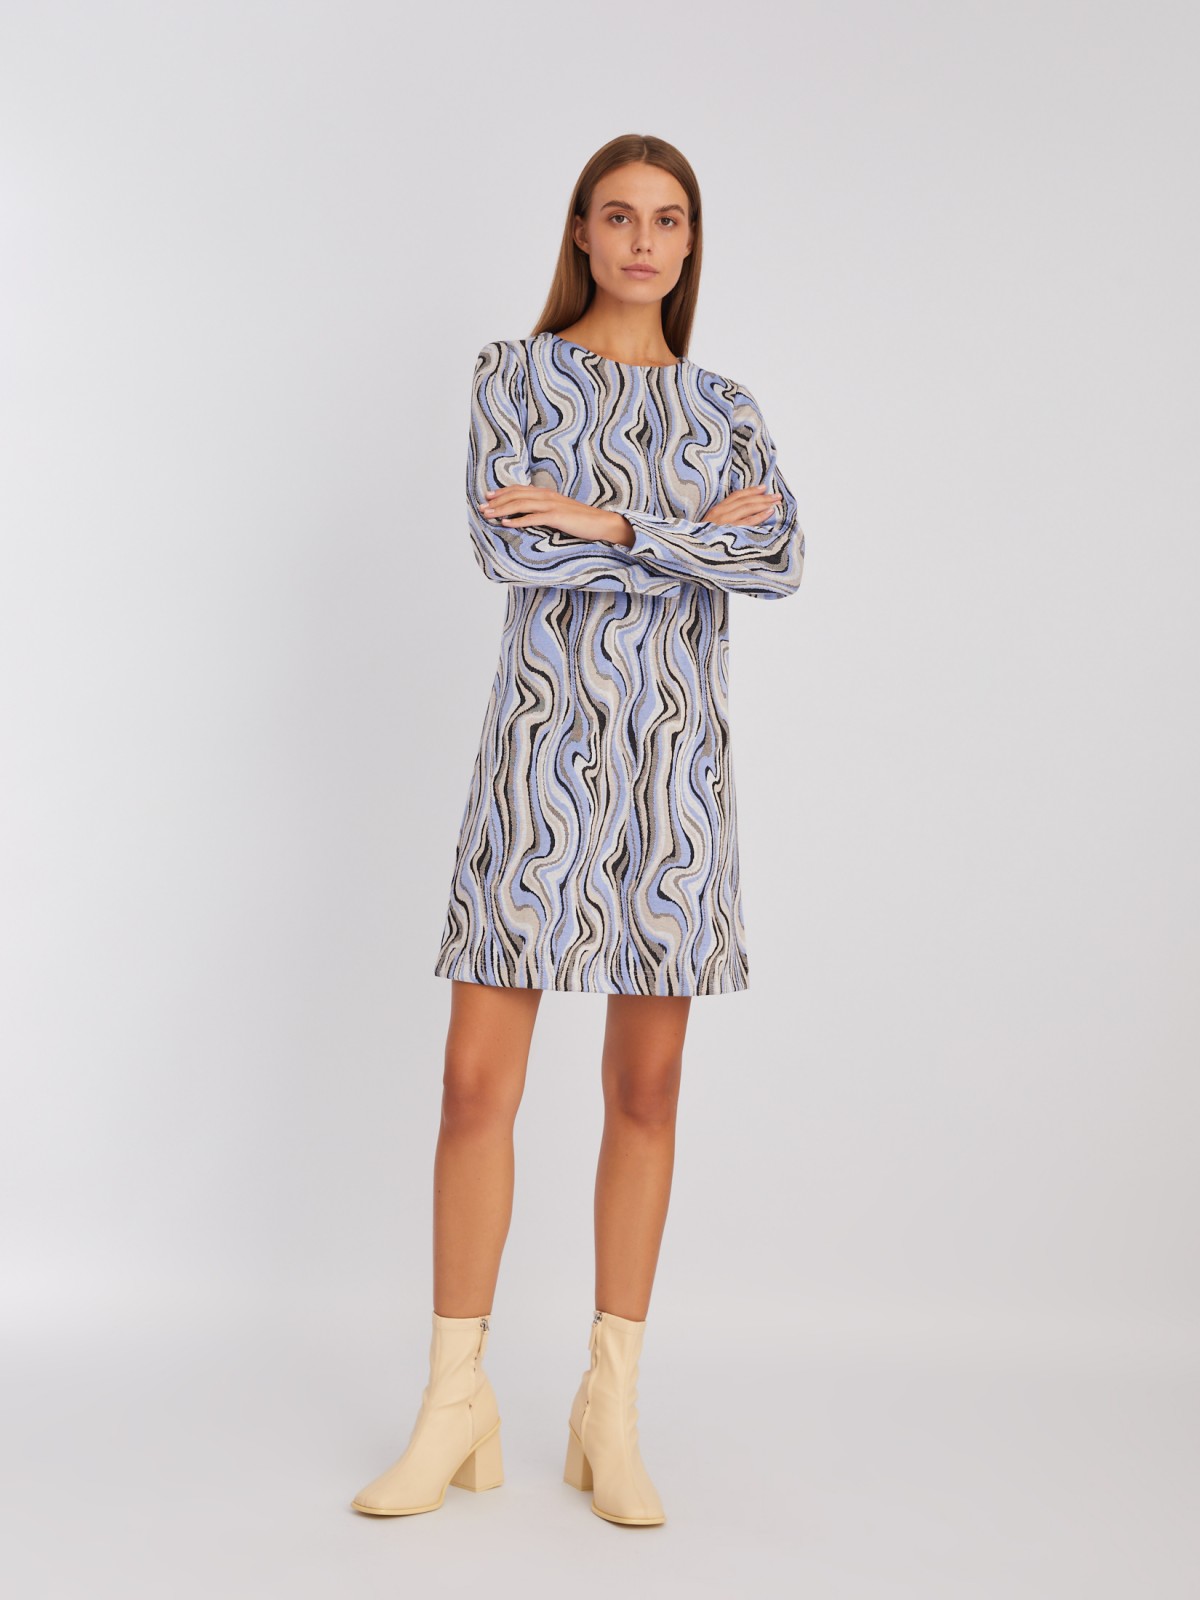 Трикотажное платье длины мини с абстрактным узором в полоску